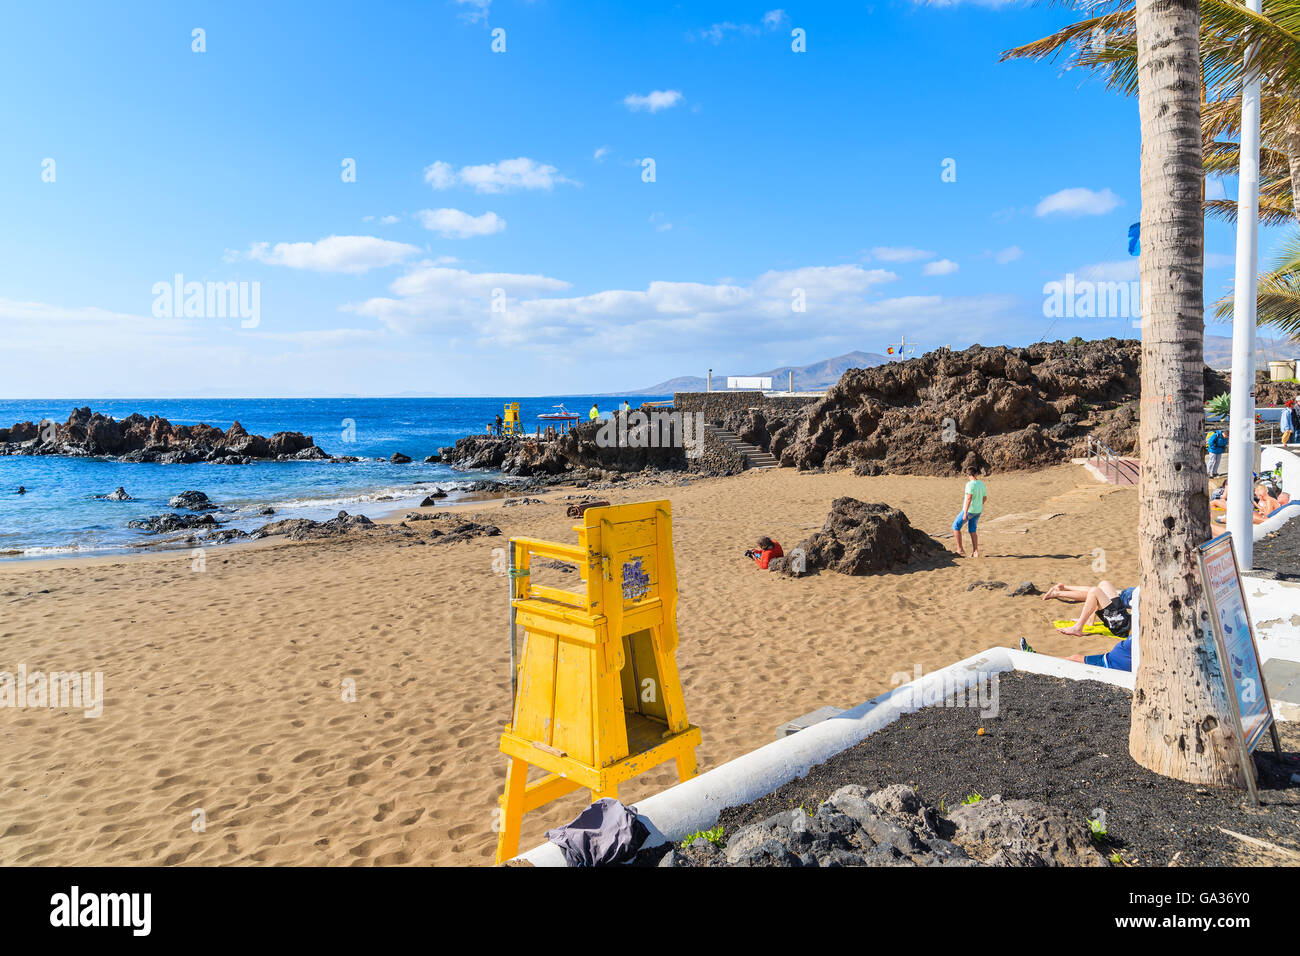 PUERTO DEL CARMEN, LANZAROTE Insel - 17. Januar 2015: Gelbe Rettungsschwimmer-Turm am tropischen Strand im Ferienort Puerto del Carmen. Kanaren sind ganzjährig beliebtes Urlaubsziel. Stockfoto